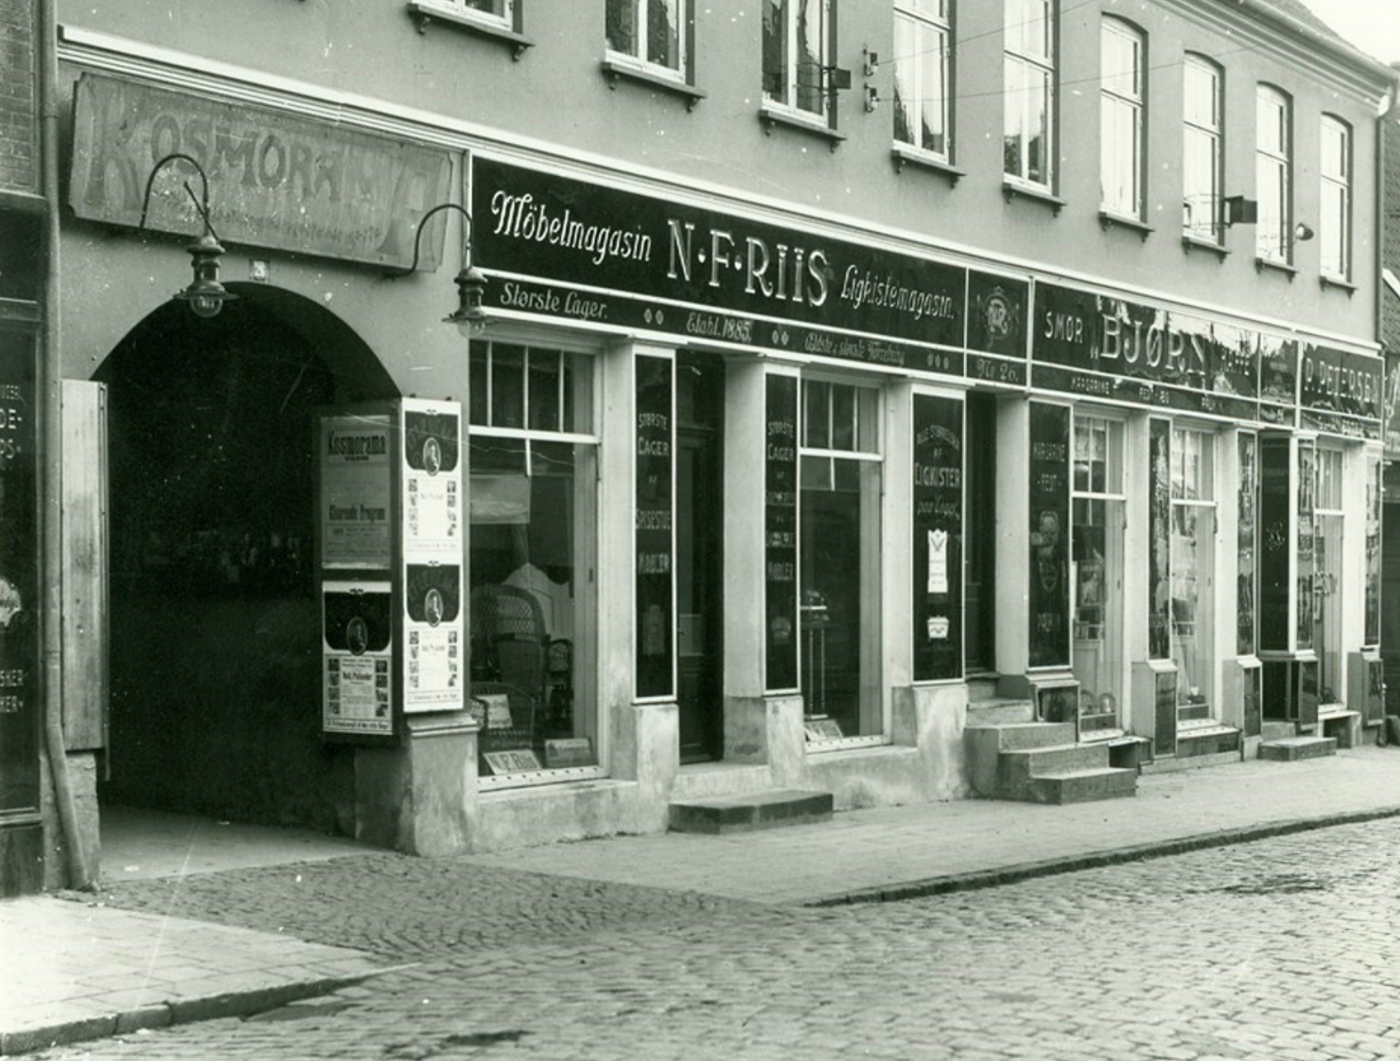 Kosmorama ca. 1920 - 1930 på Algade 26, med porten til biografen og Møbelmagasin N.F. Riis; (ukendt fotograf; kilde: www.arkiv.dk